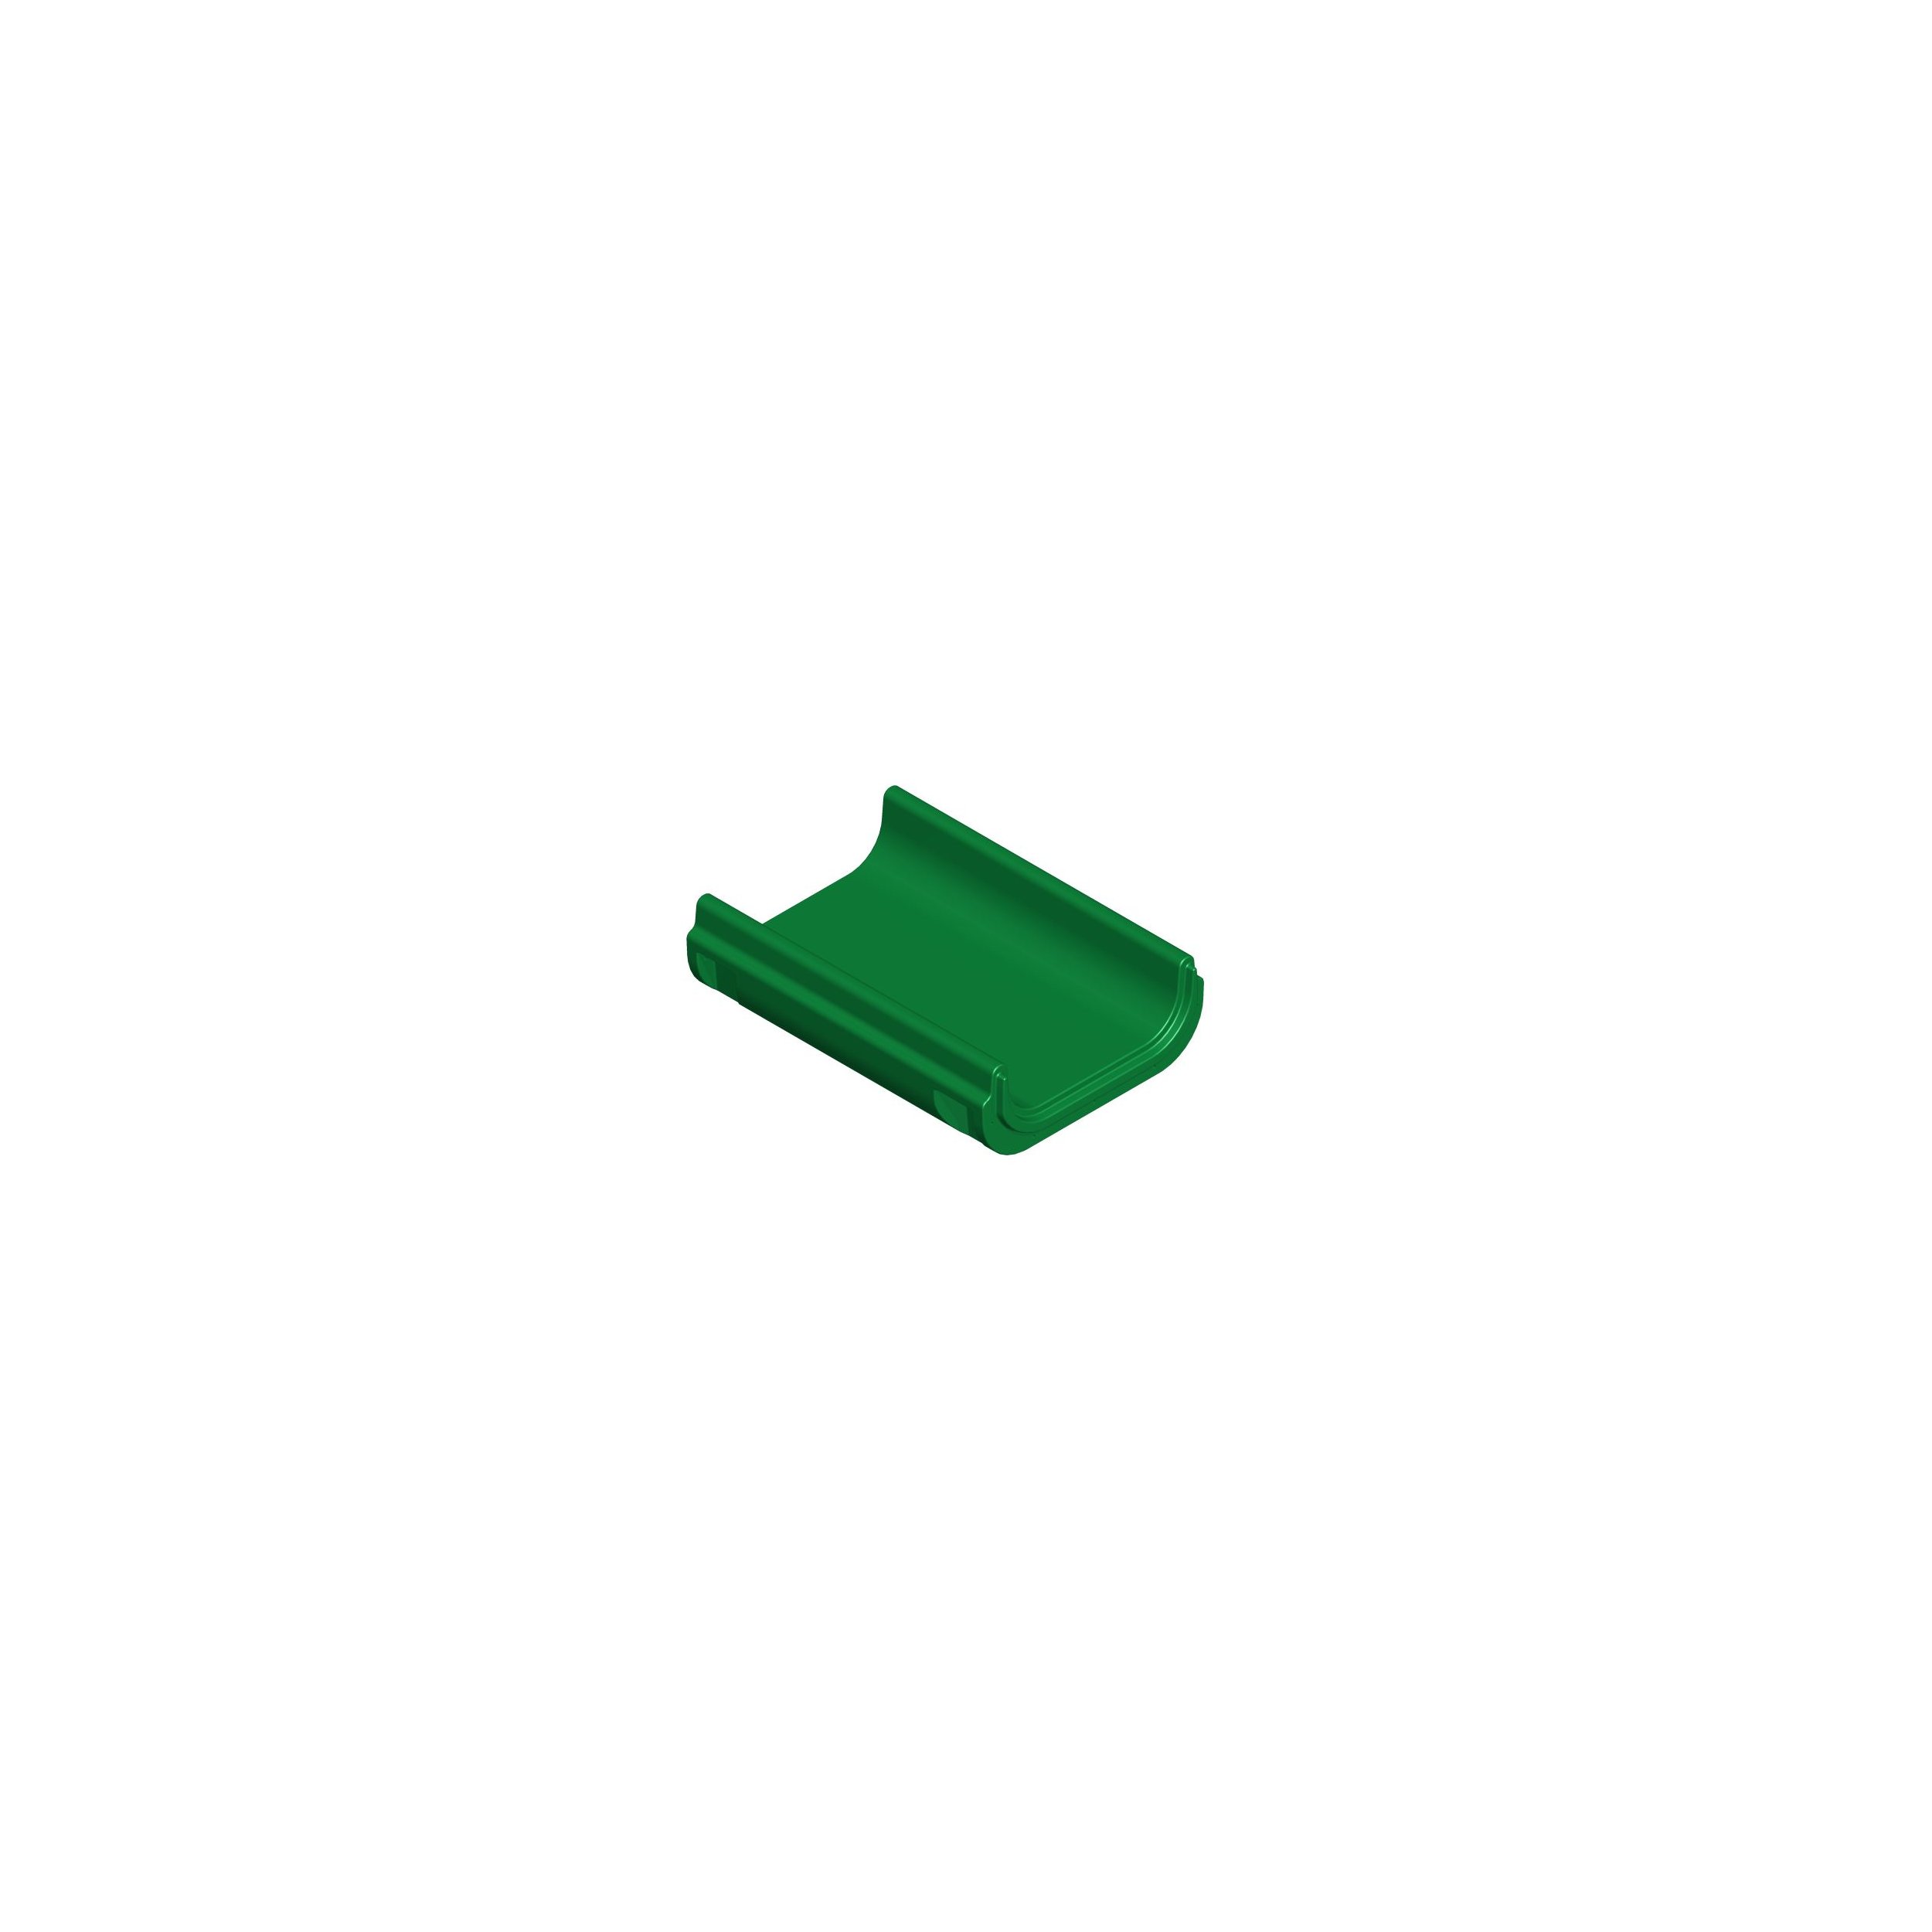 Modul für Hangrutsche - Mittelteil - Länge 106 cm grün